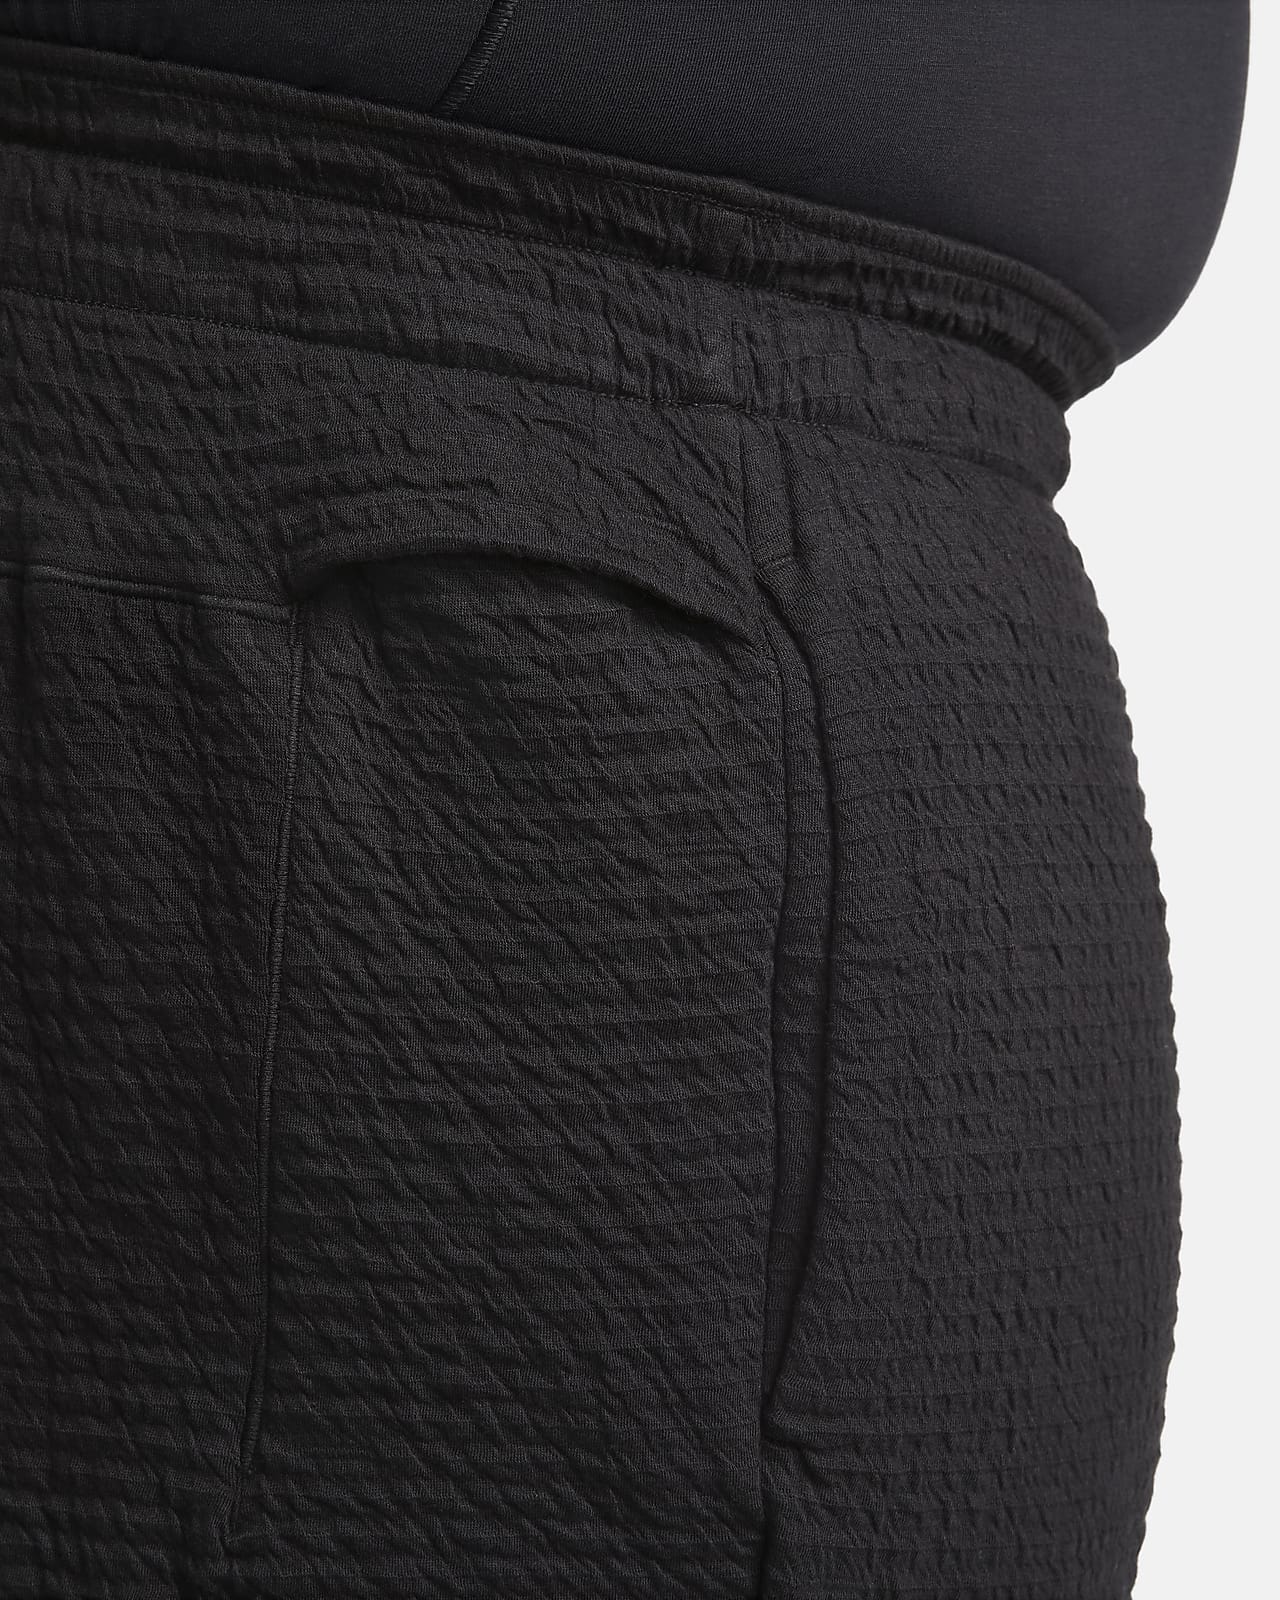 Nike Yoga Dri-FIT Pant CZ2208-010 Black Men Size X-Large 